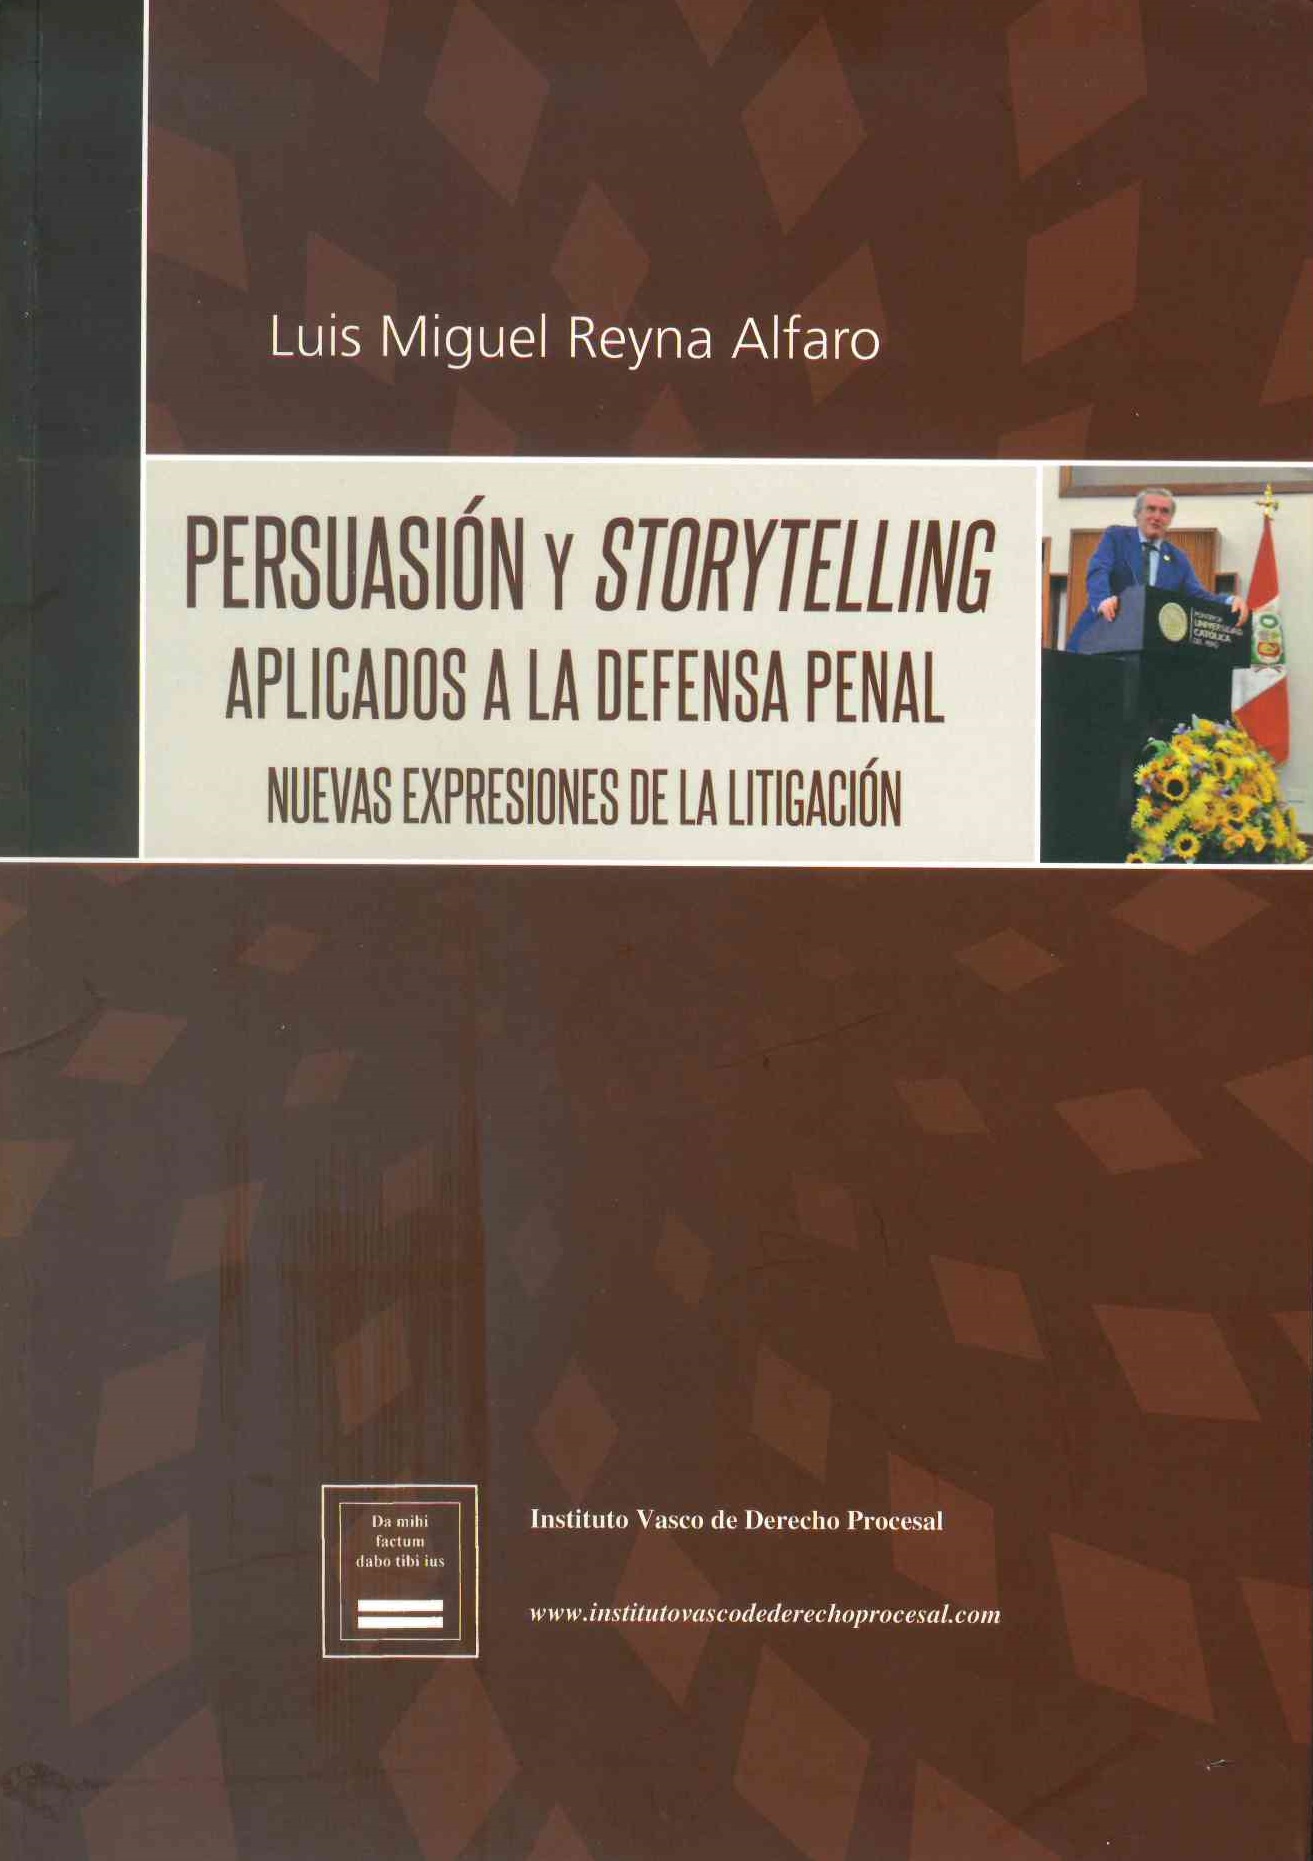 Persuasión y storytelling aplicados a la defensa penal. Nuevas expresiones de l litigación